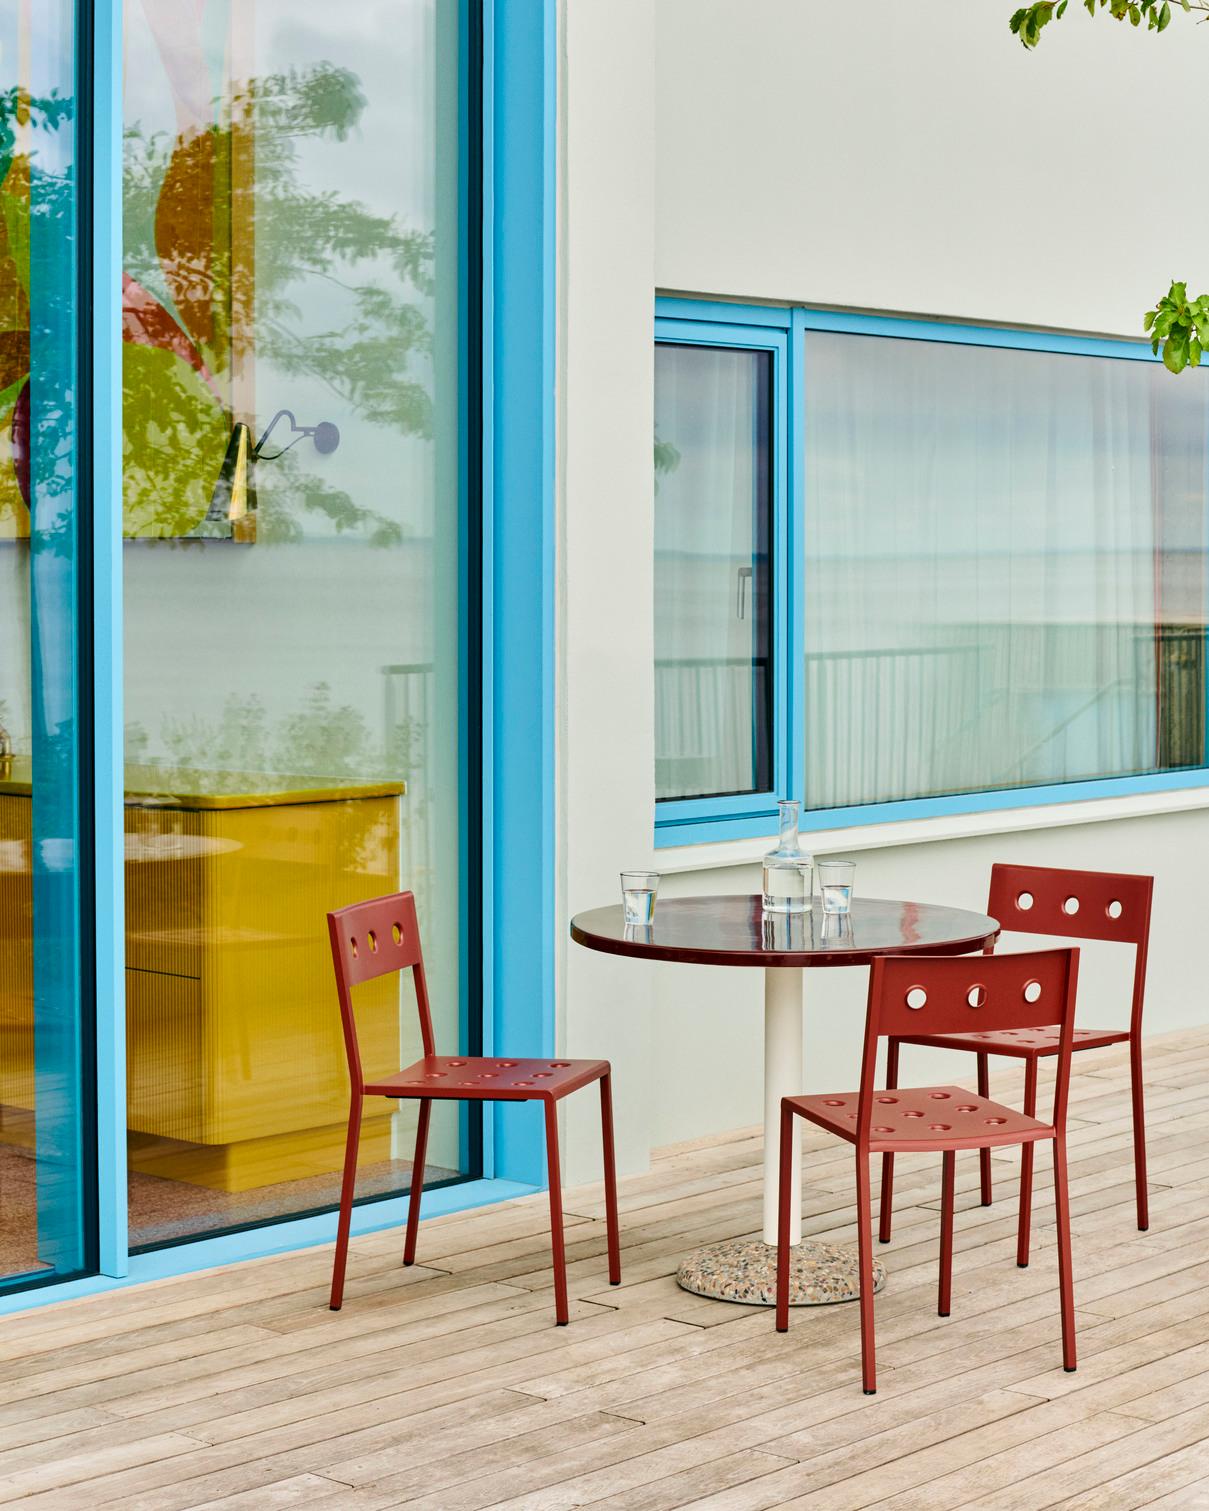 La collaboration fructueuse entre HAY et Muller Van Severen se poursuit avec la Ceramic Table - une table d'extérieur caractérisée par l'expression minimaliste caractéristique des designers combinée à leur utilisation audacieuse de la couleur. 
La